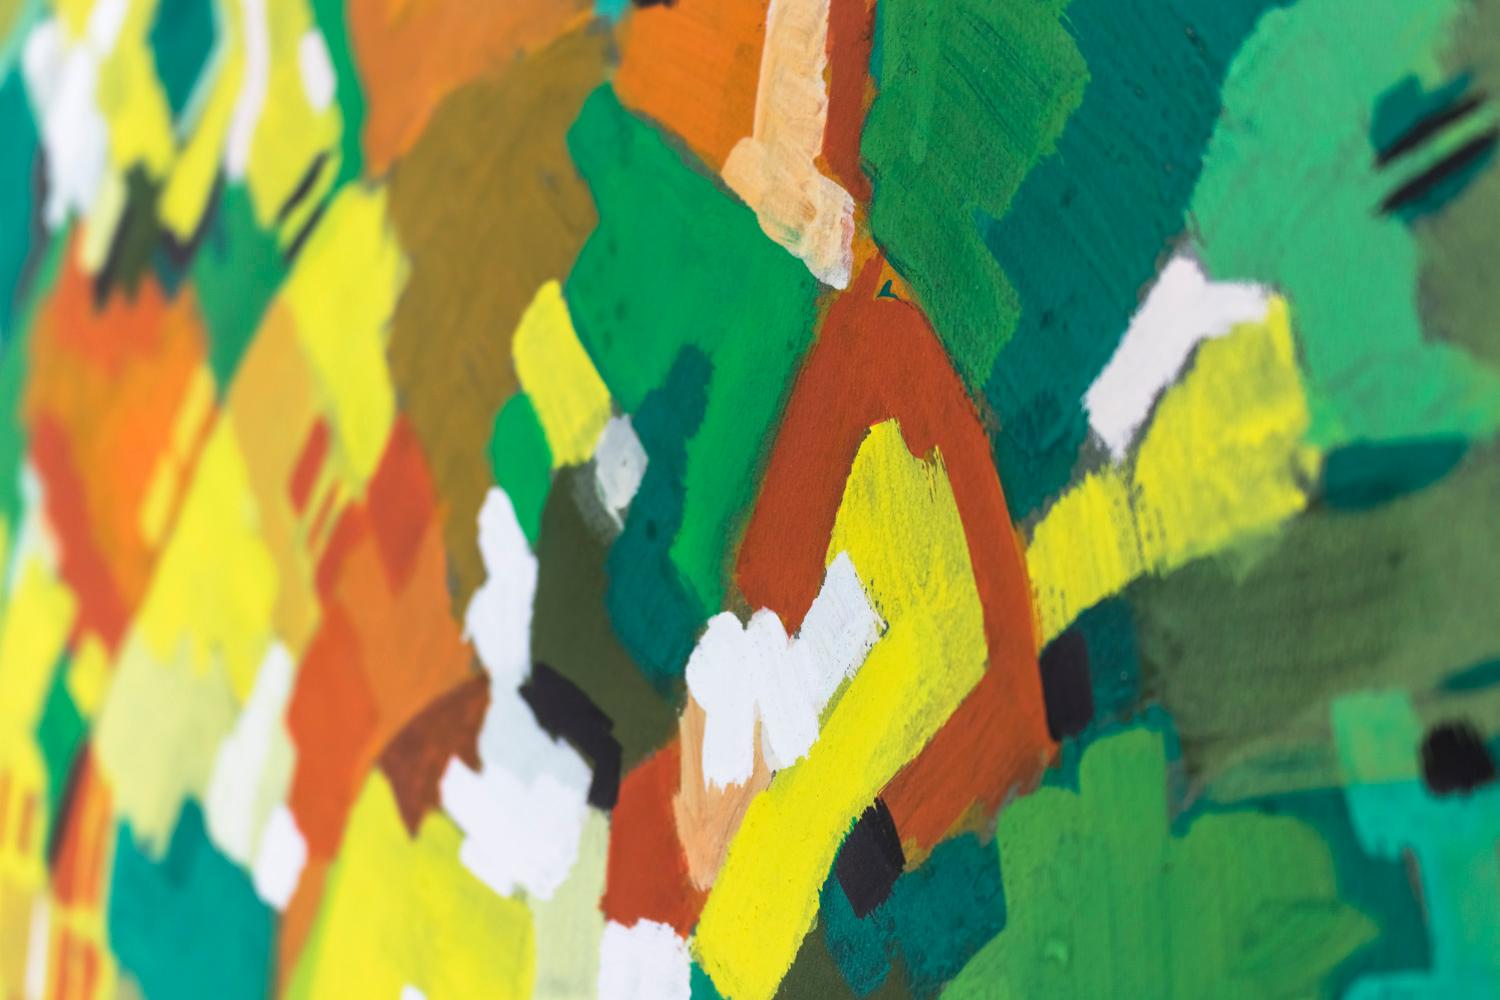 Marcel Mulot, unterzeichnet.
Abstrakte Gouache auf Papier mit geometrischen, konzentrischen Farbschwaden in den Farben Grün, Gelb, Orange, Schwarz und Weiß.

Werk signiert 